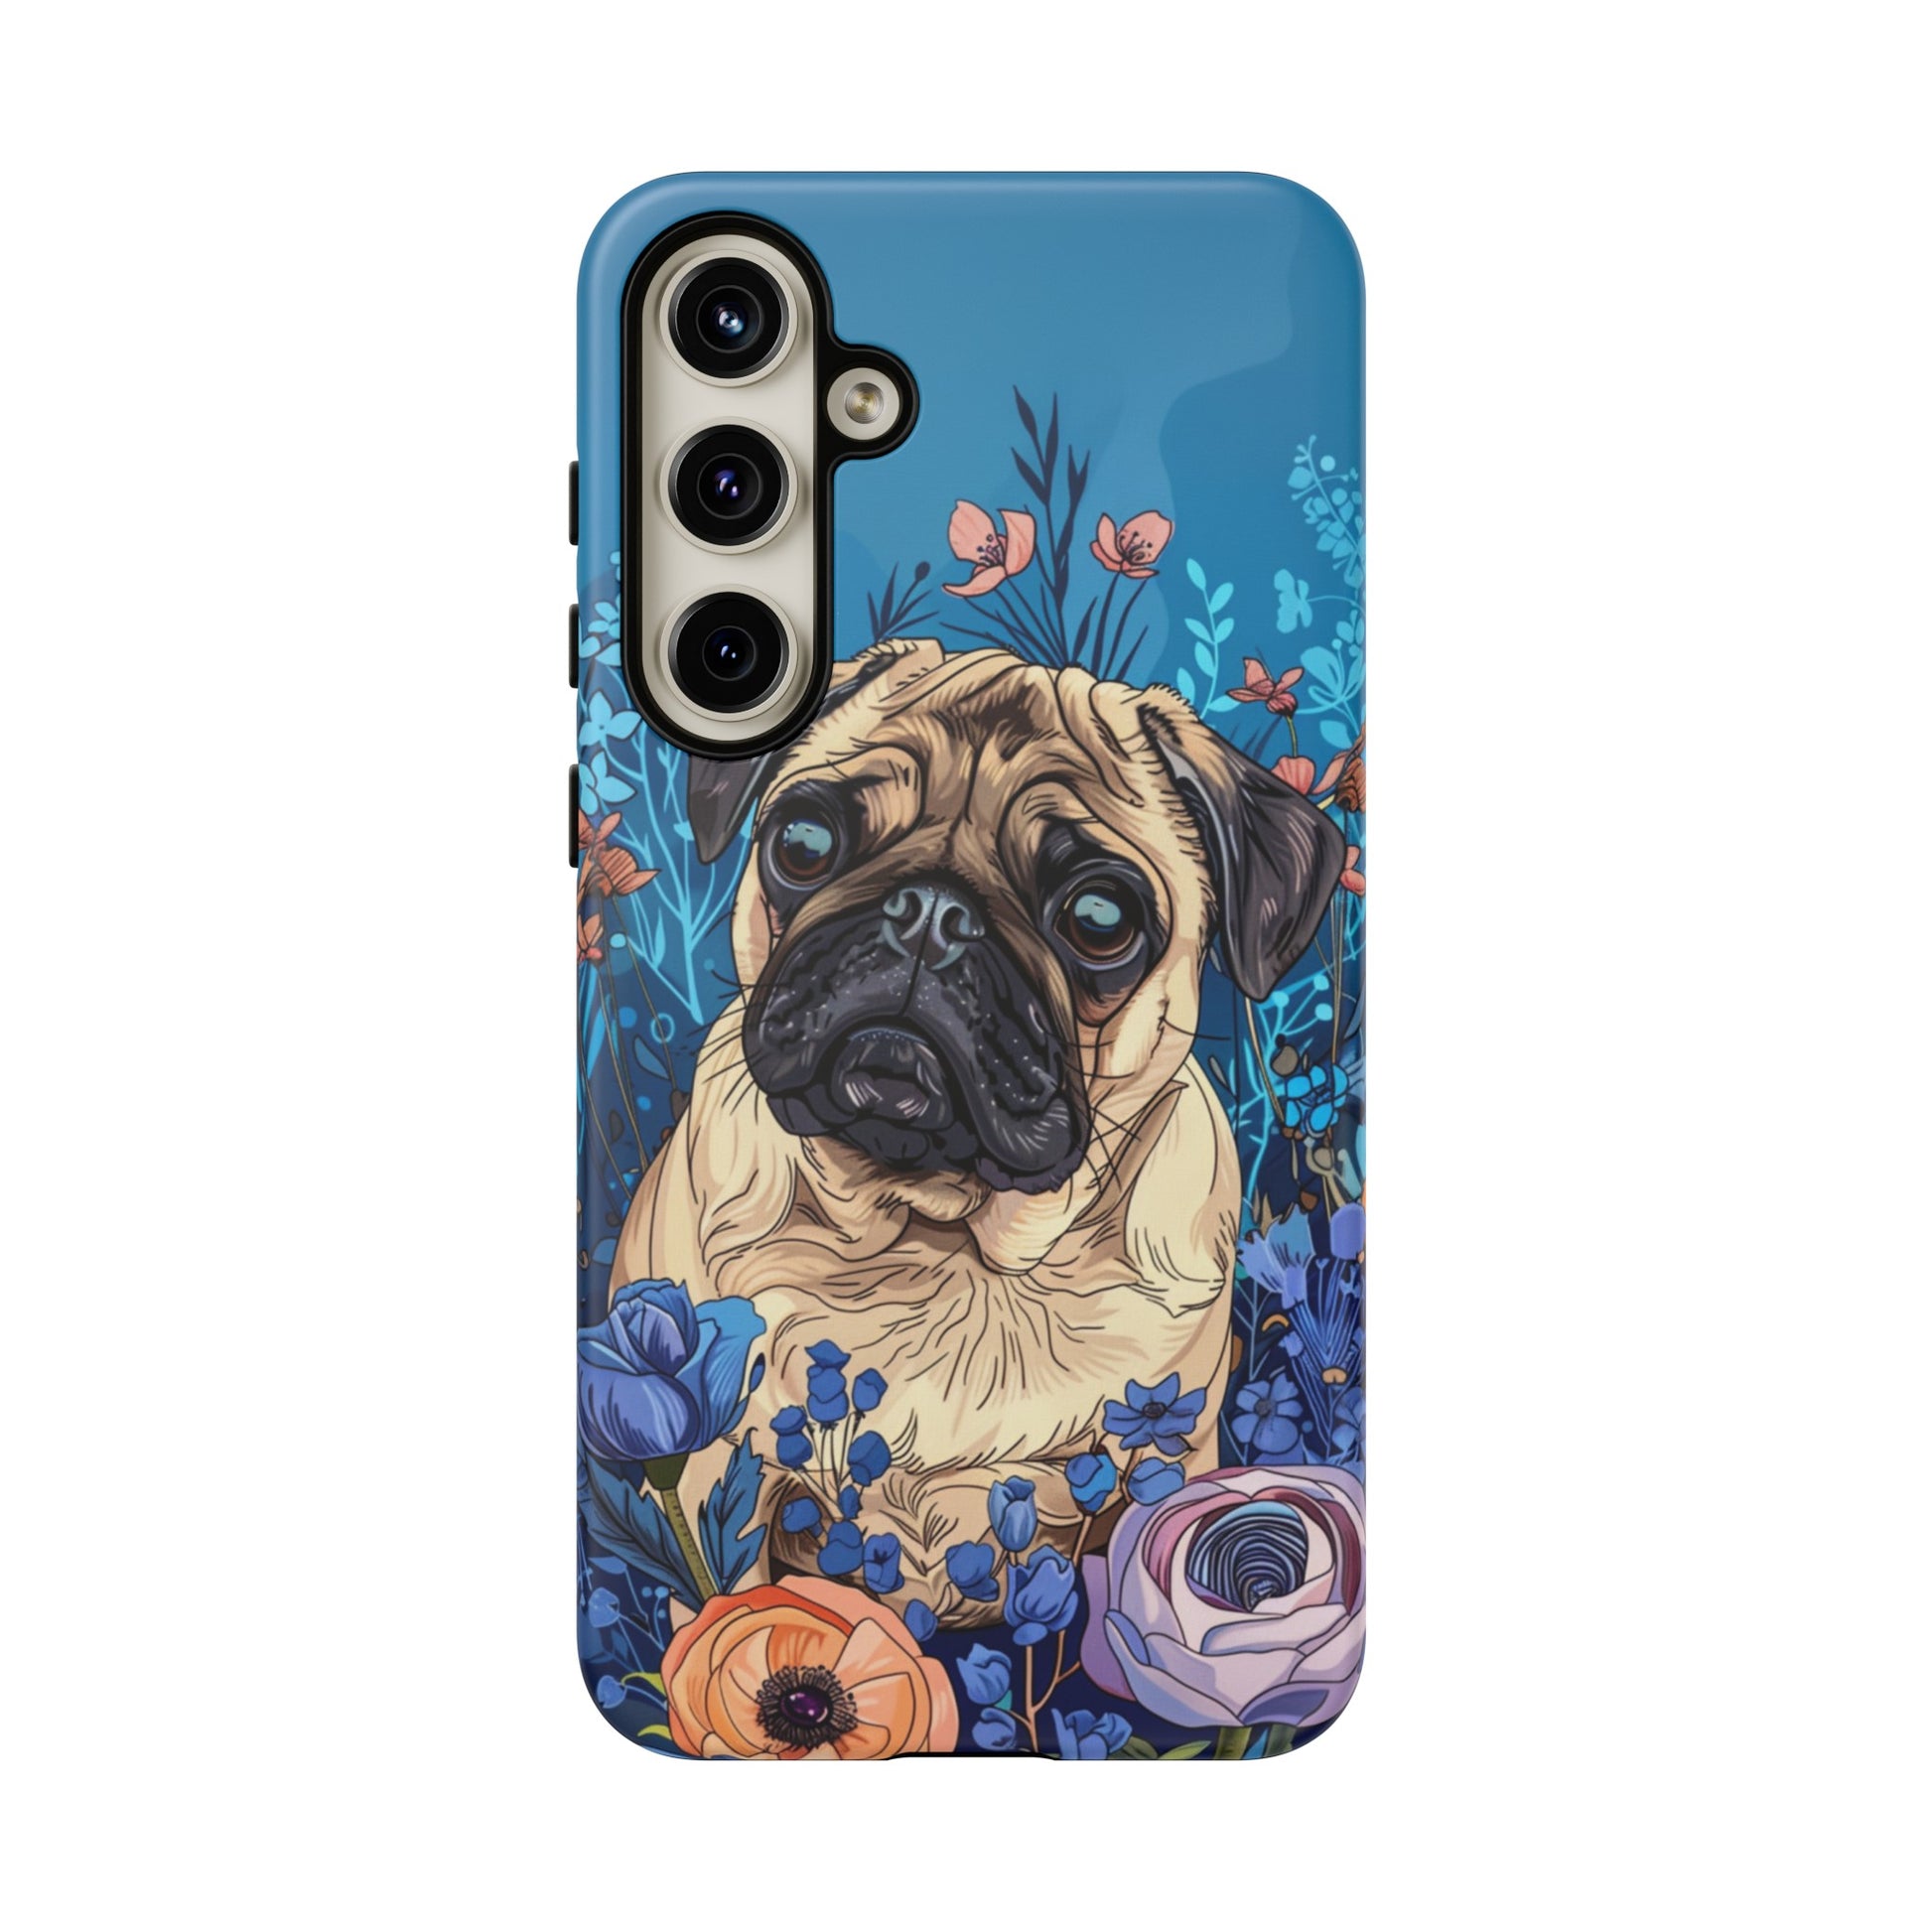 Dog lover phone case for Google Pixel